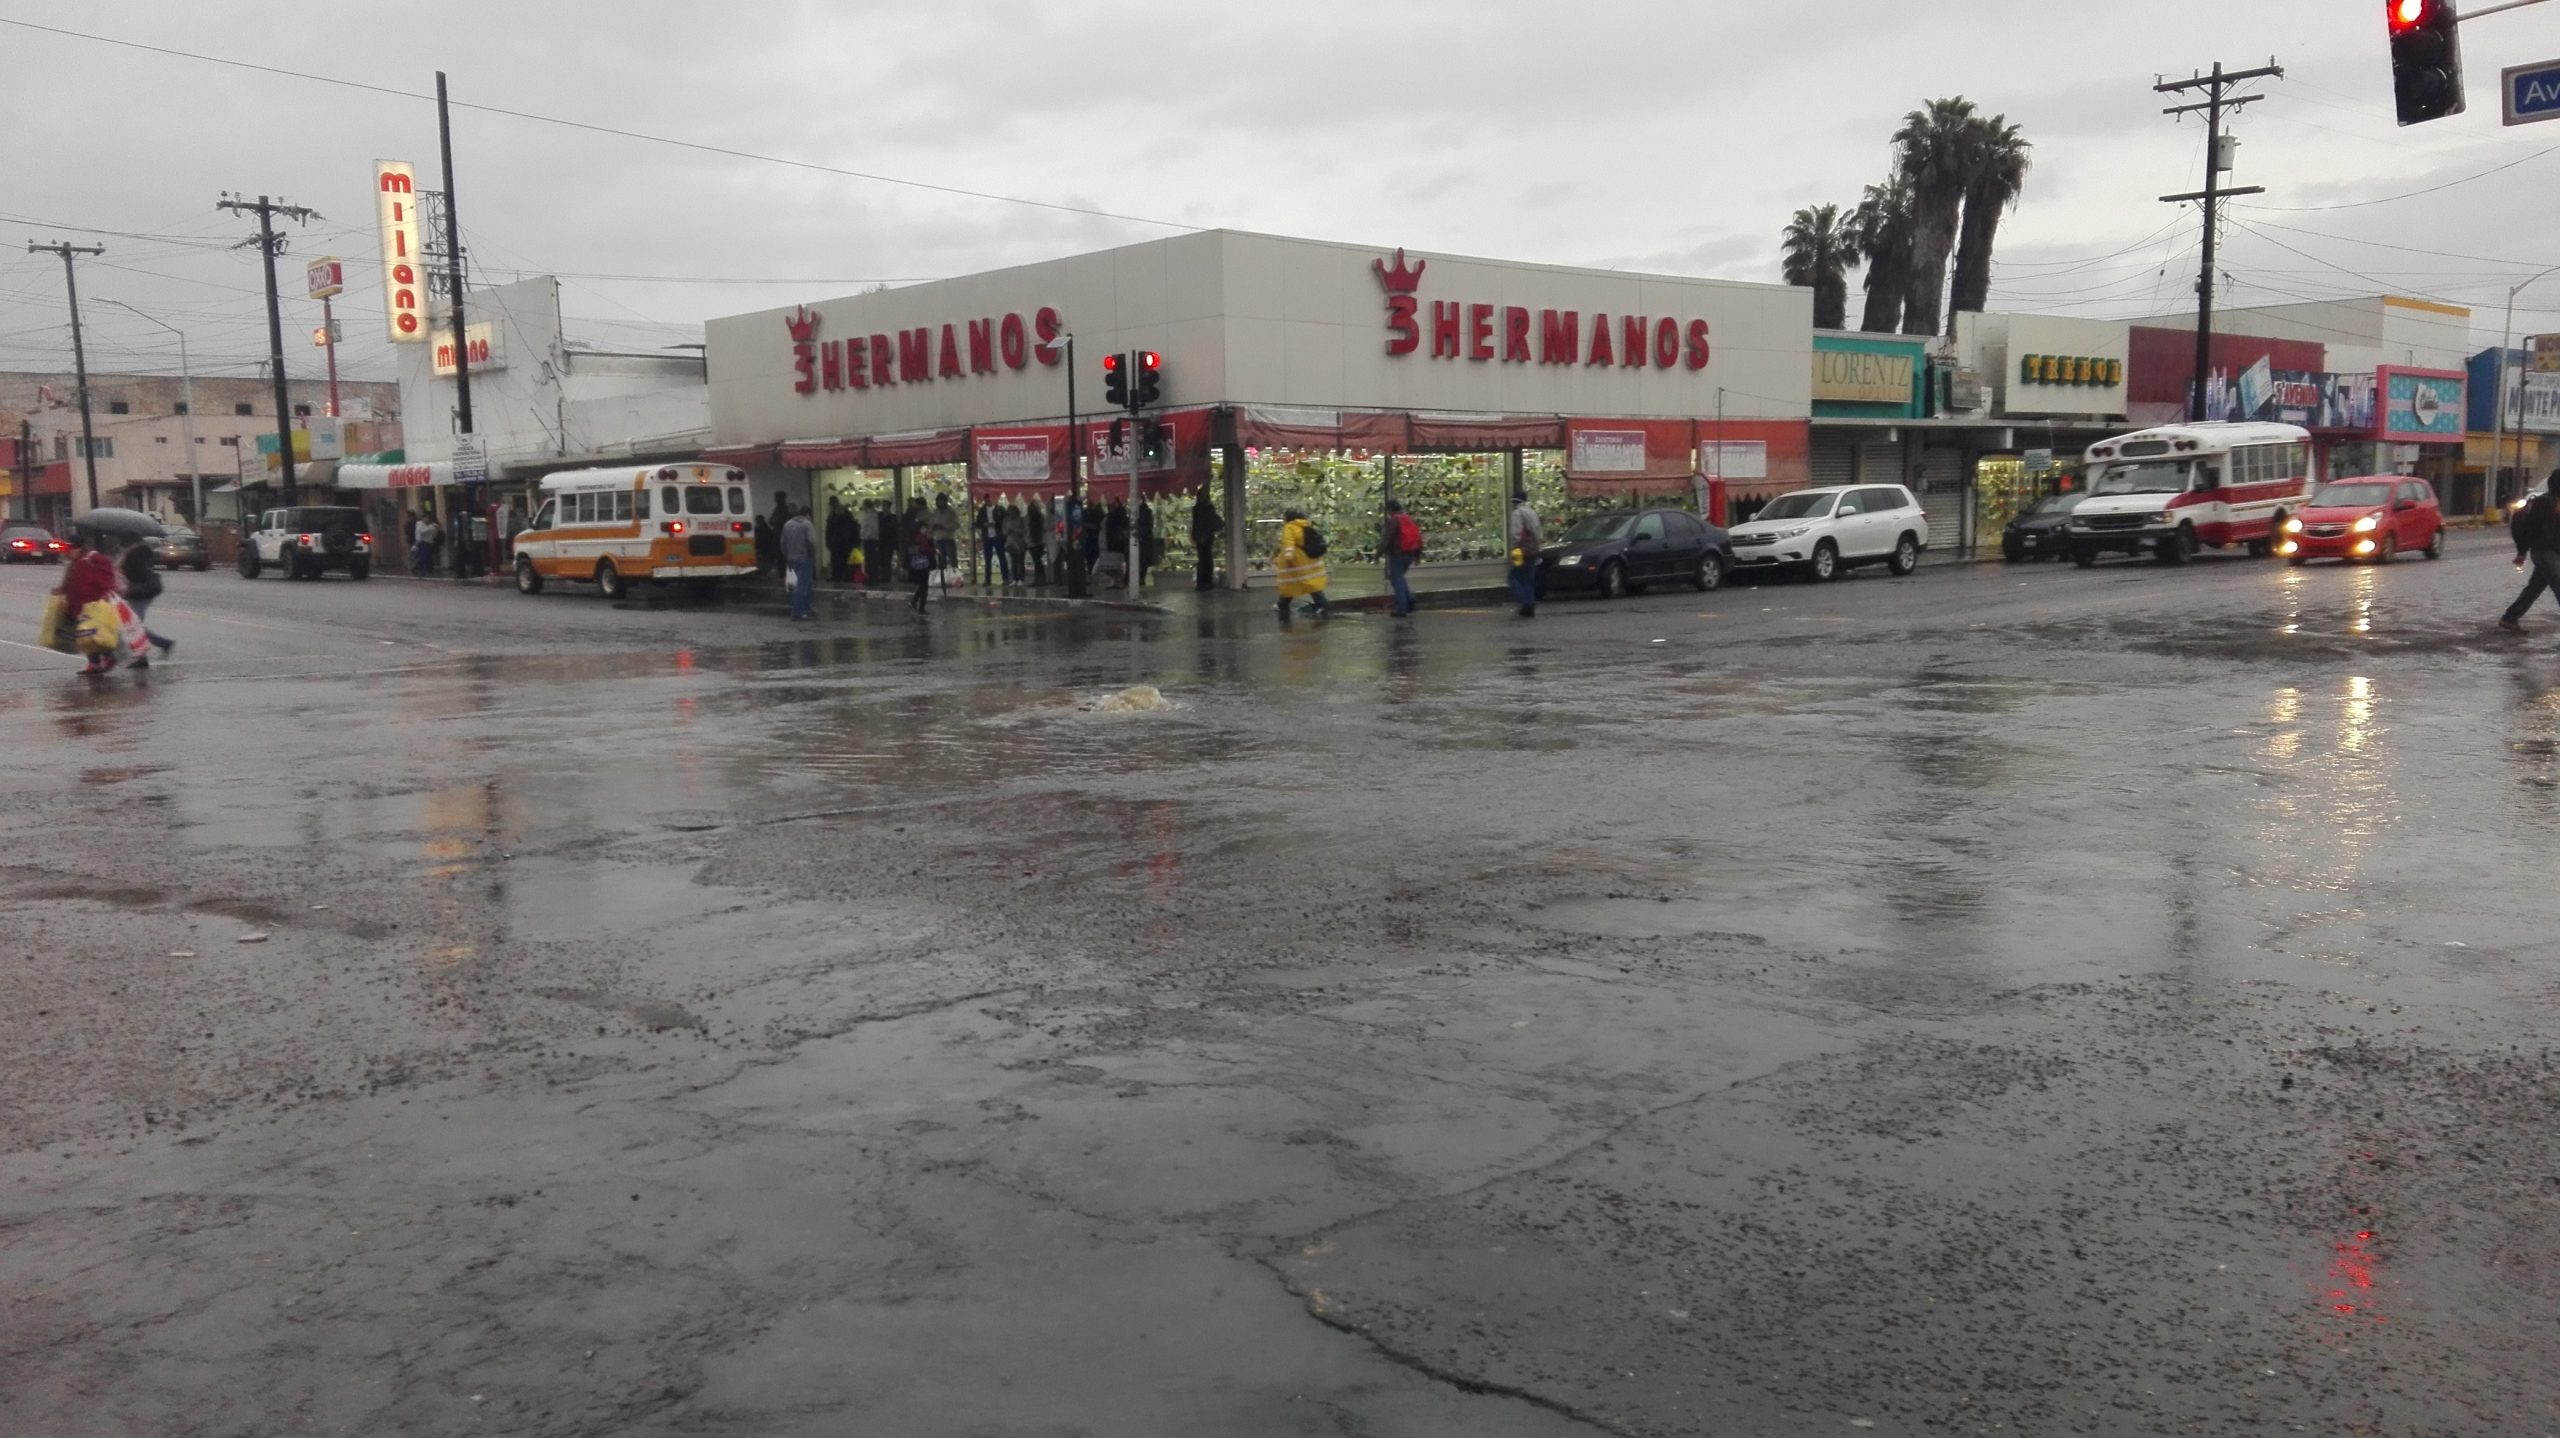 Inundada gran parte de Ensenada por la tormenta - Semanario ZETA